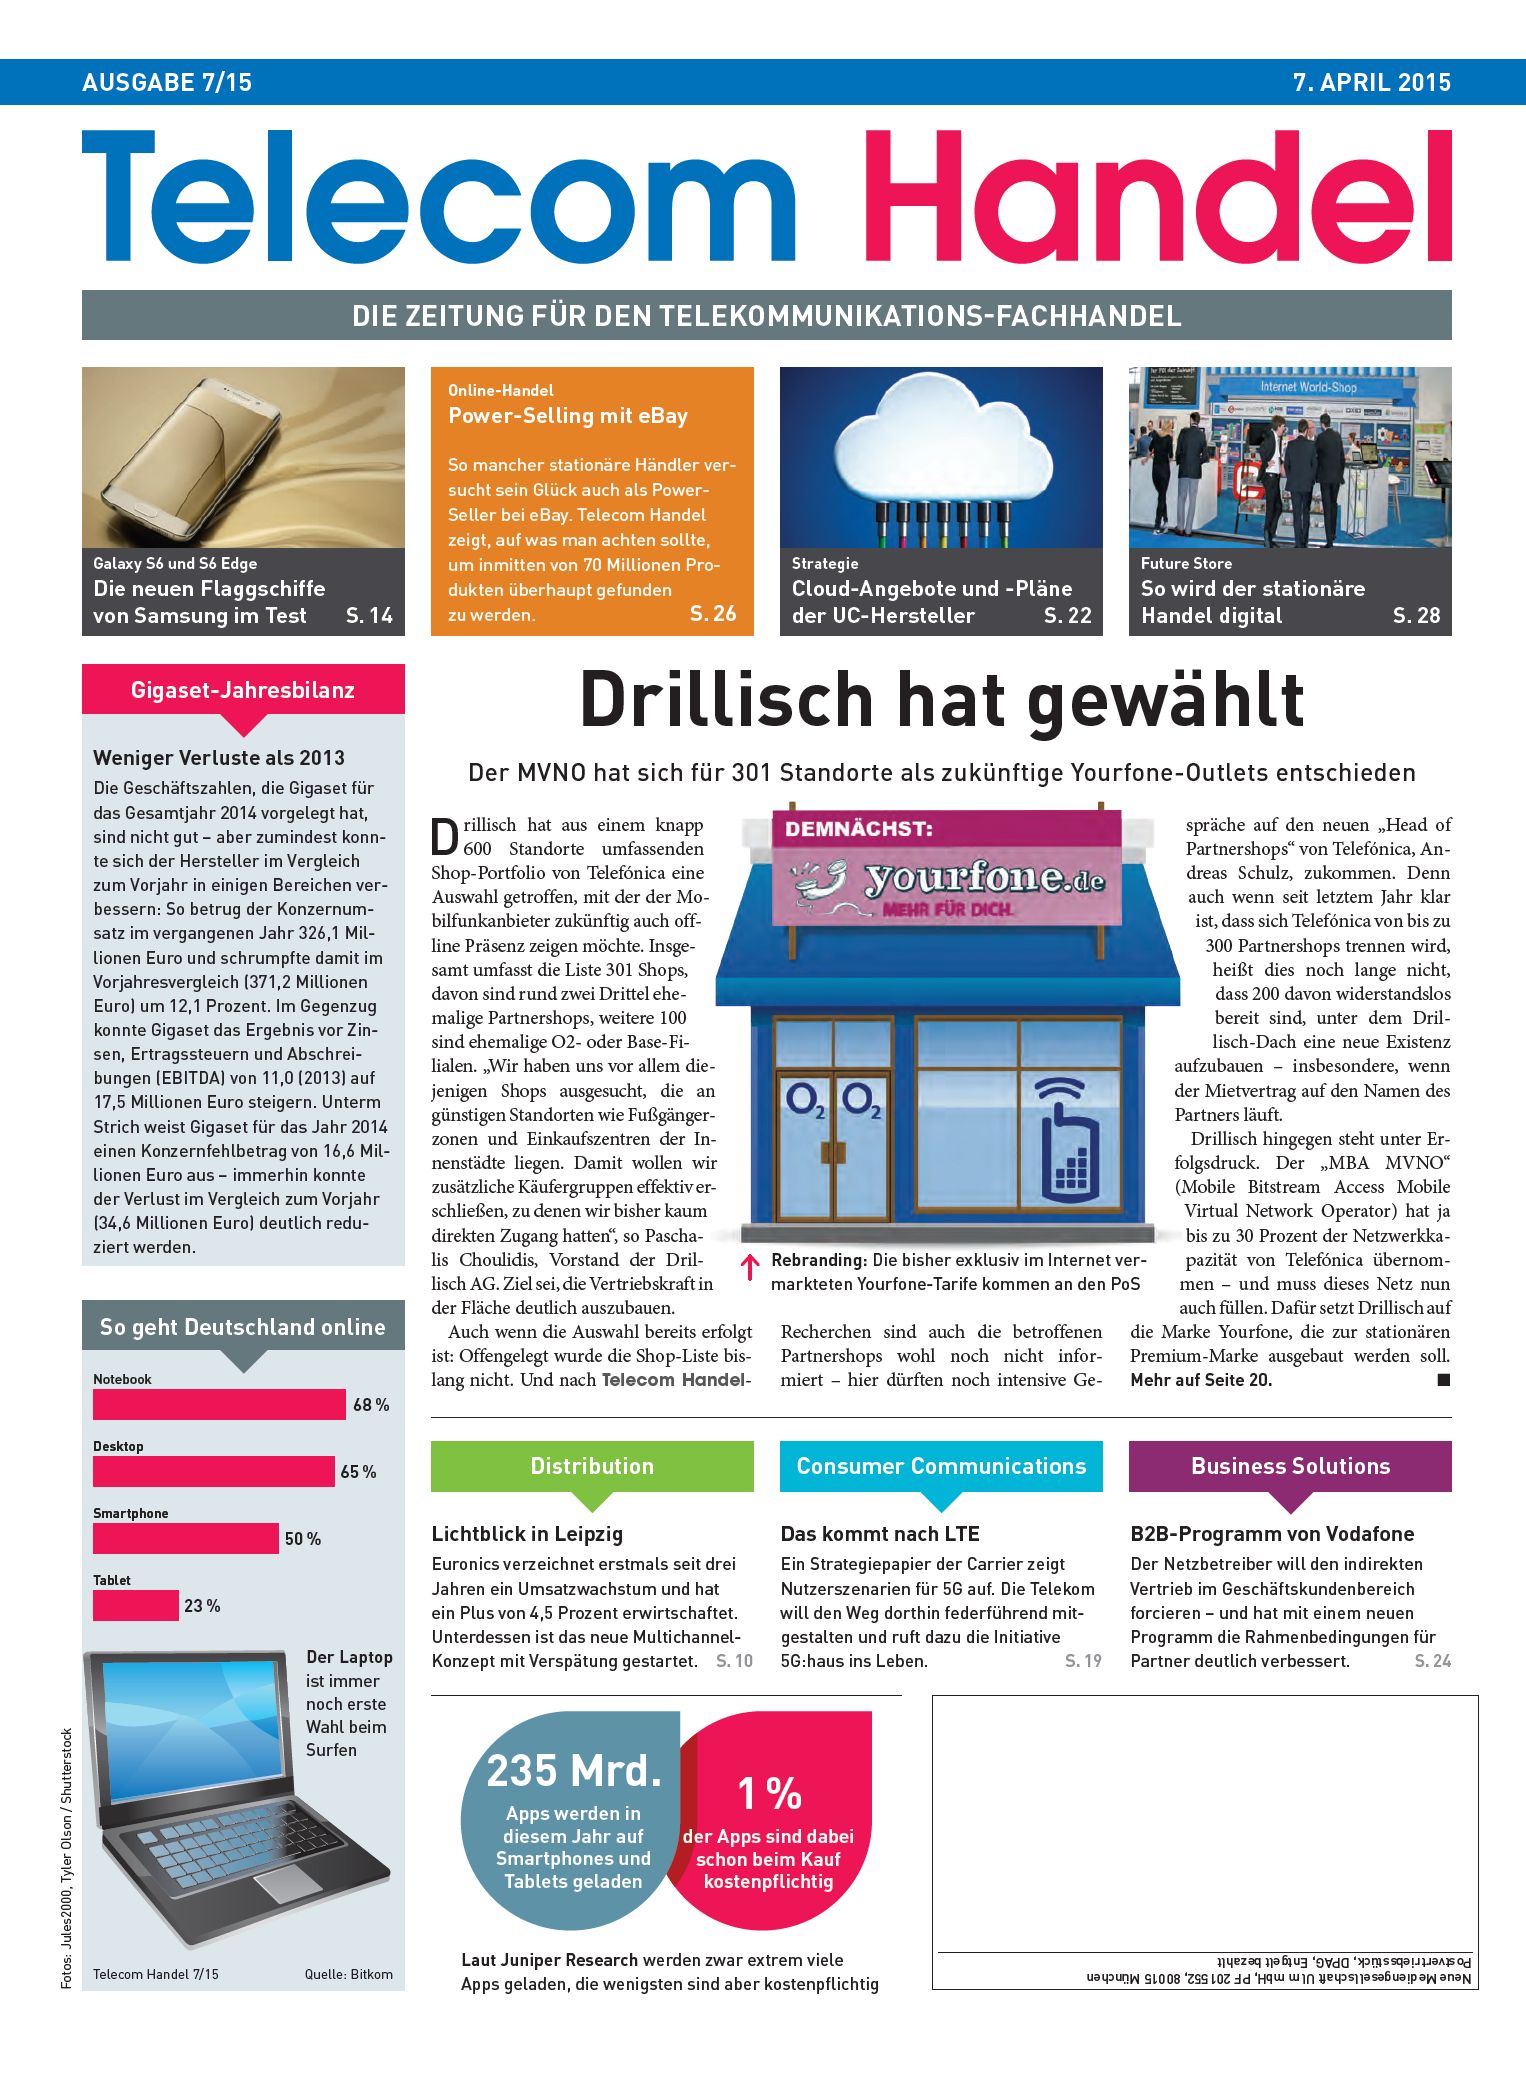 Telecom Handel Ausgabe 07/2015